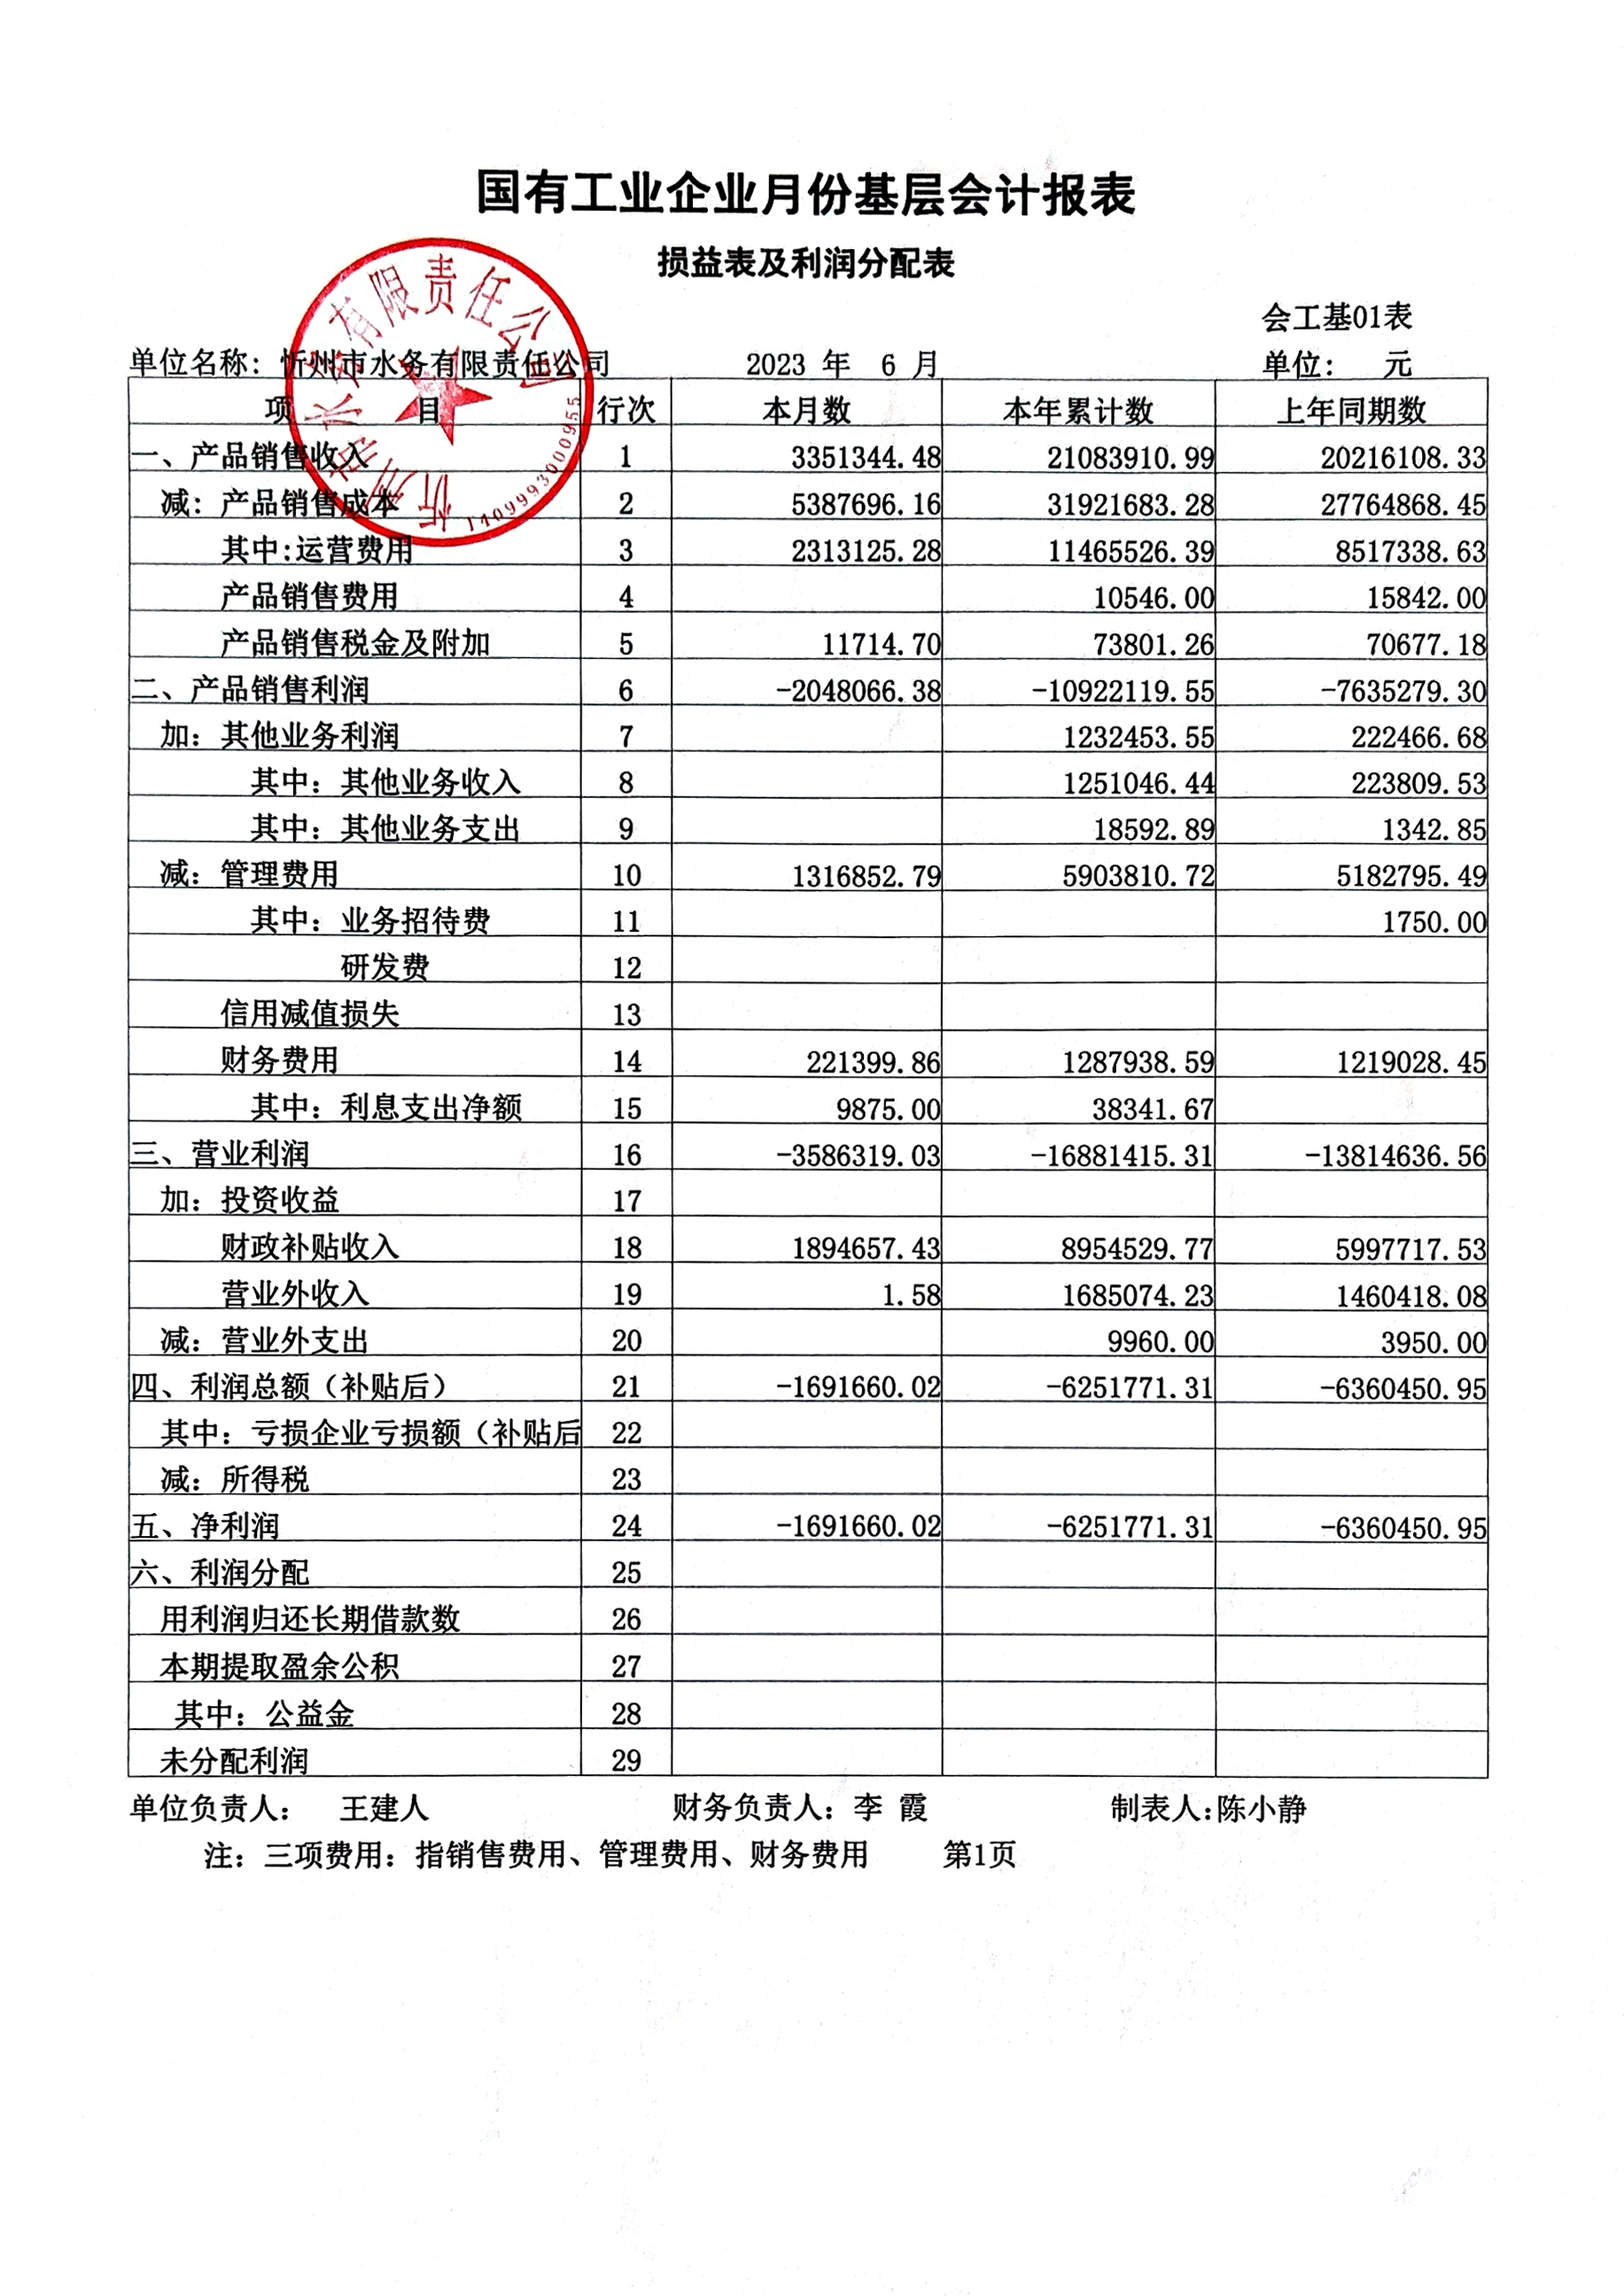 忻州水務2023年第二季度財務報表公示.jpg